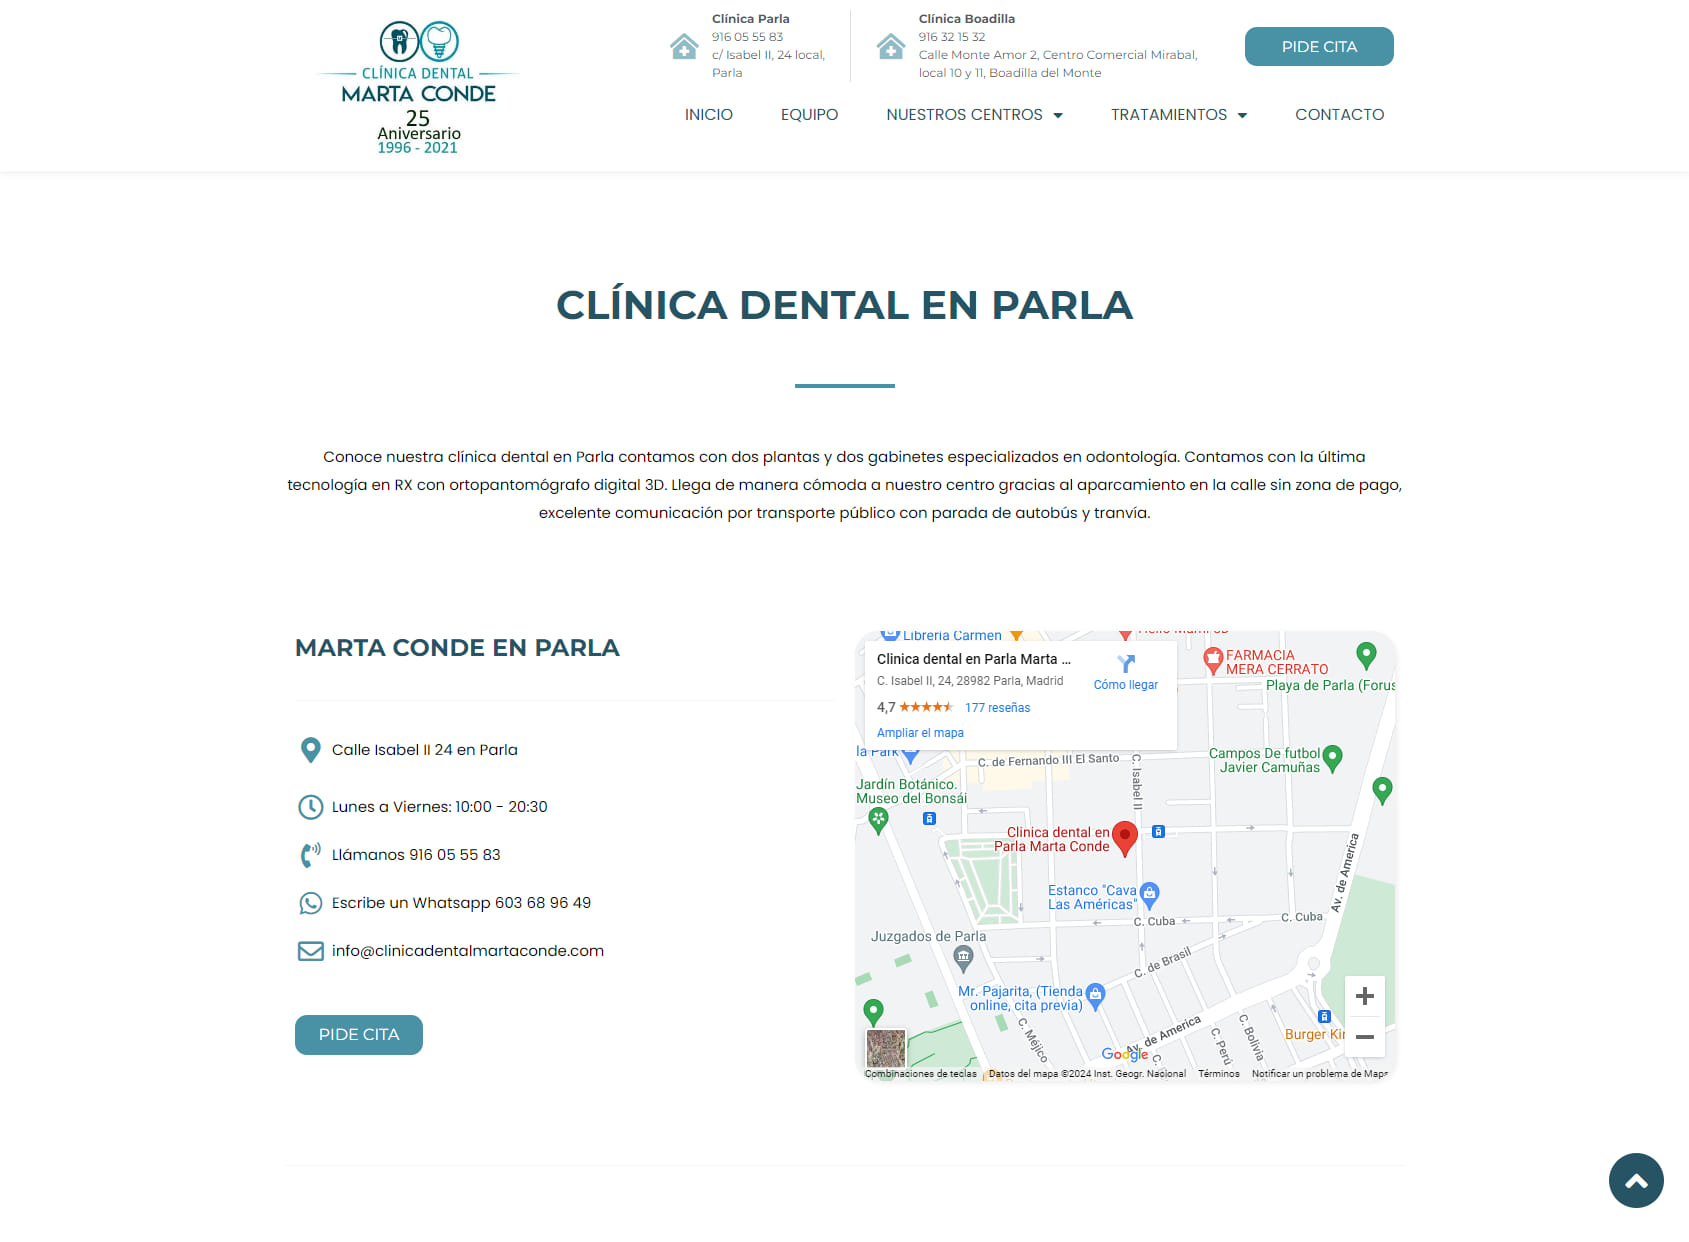 Clinica dental en Parla Marta Conde